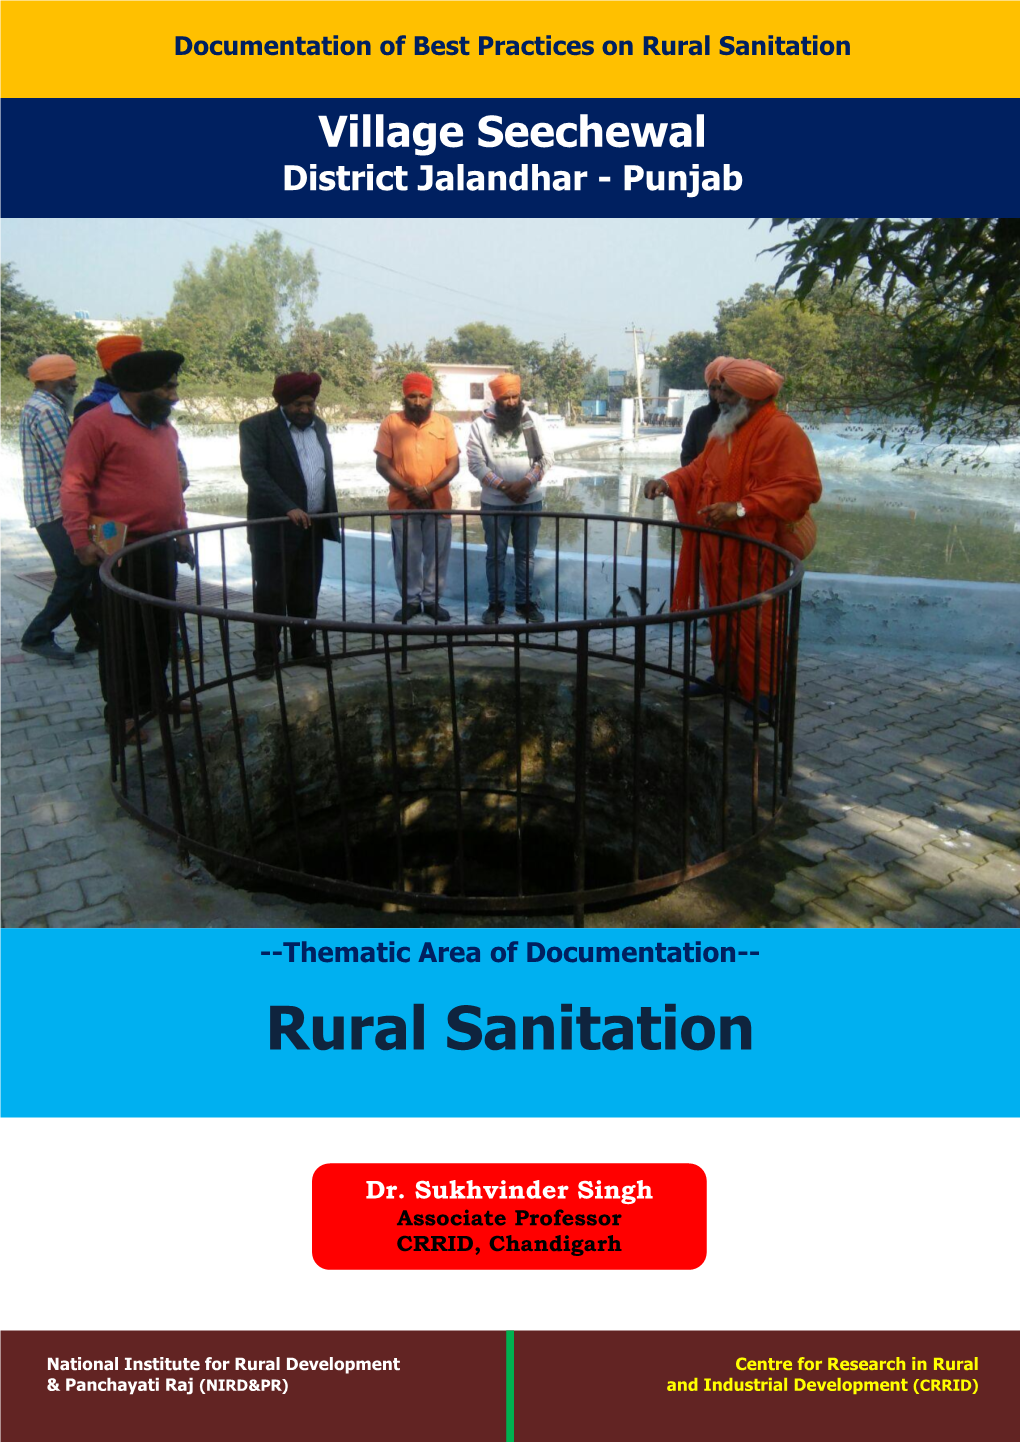 Rural Sanitation in Village Seechewal Jalandhar Punjab